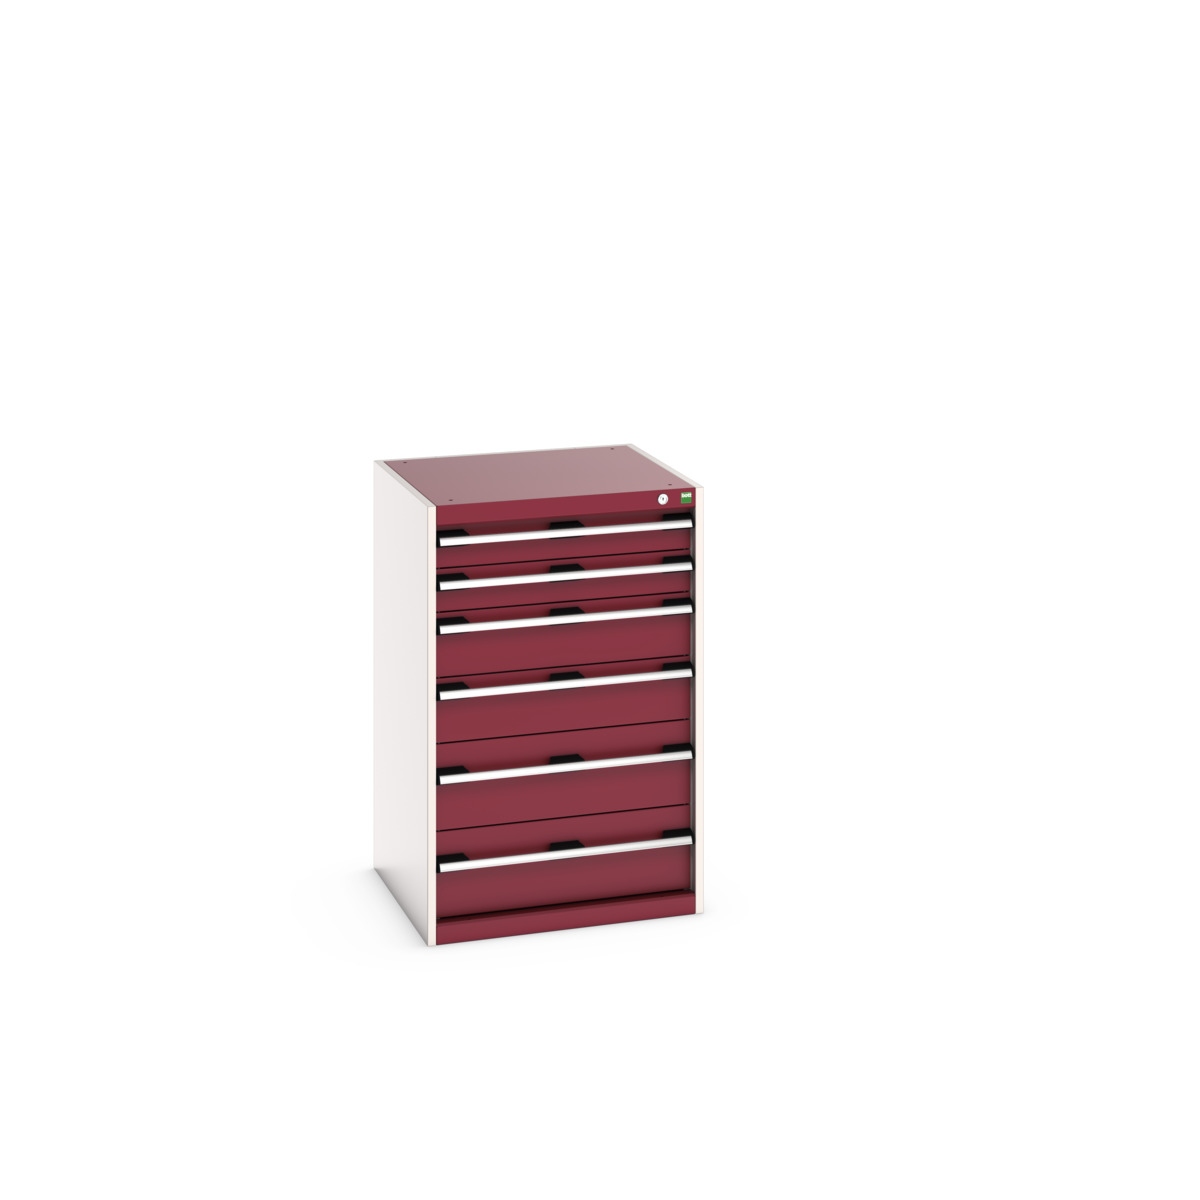 40019059.24V - cubio drawer cabinet